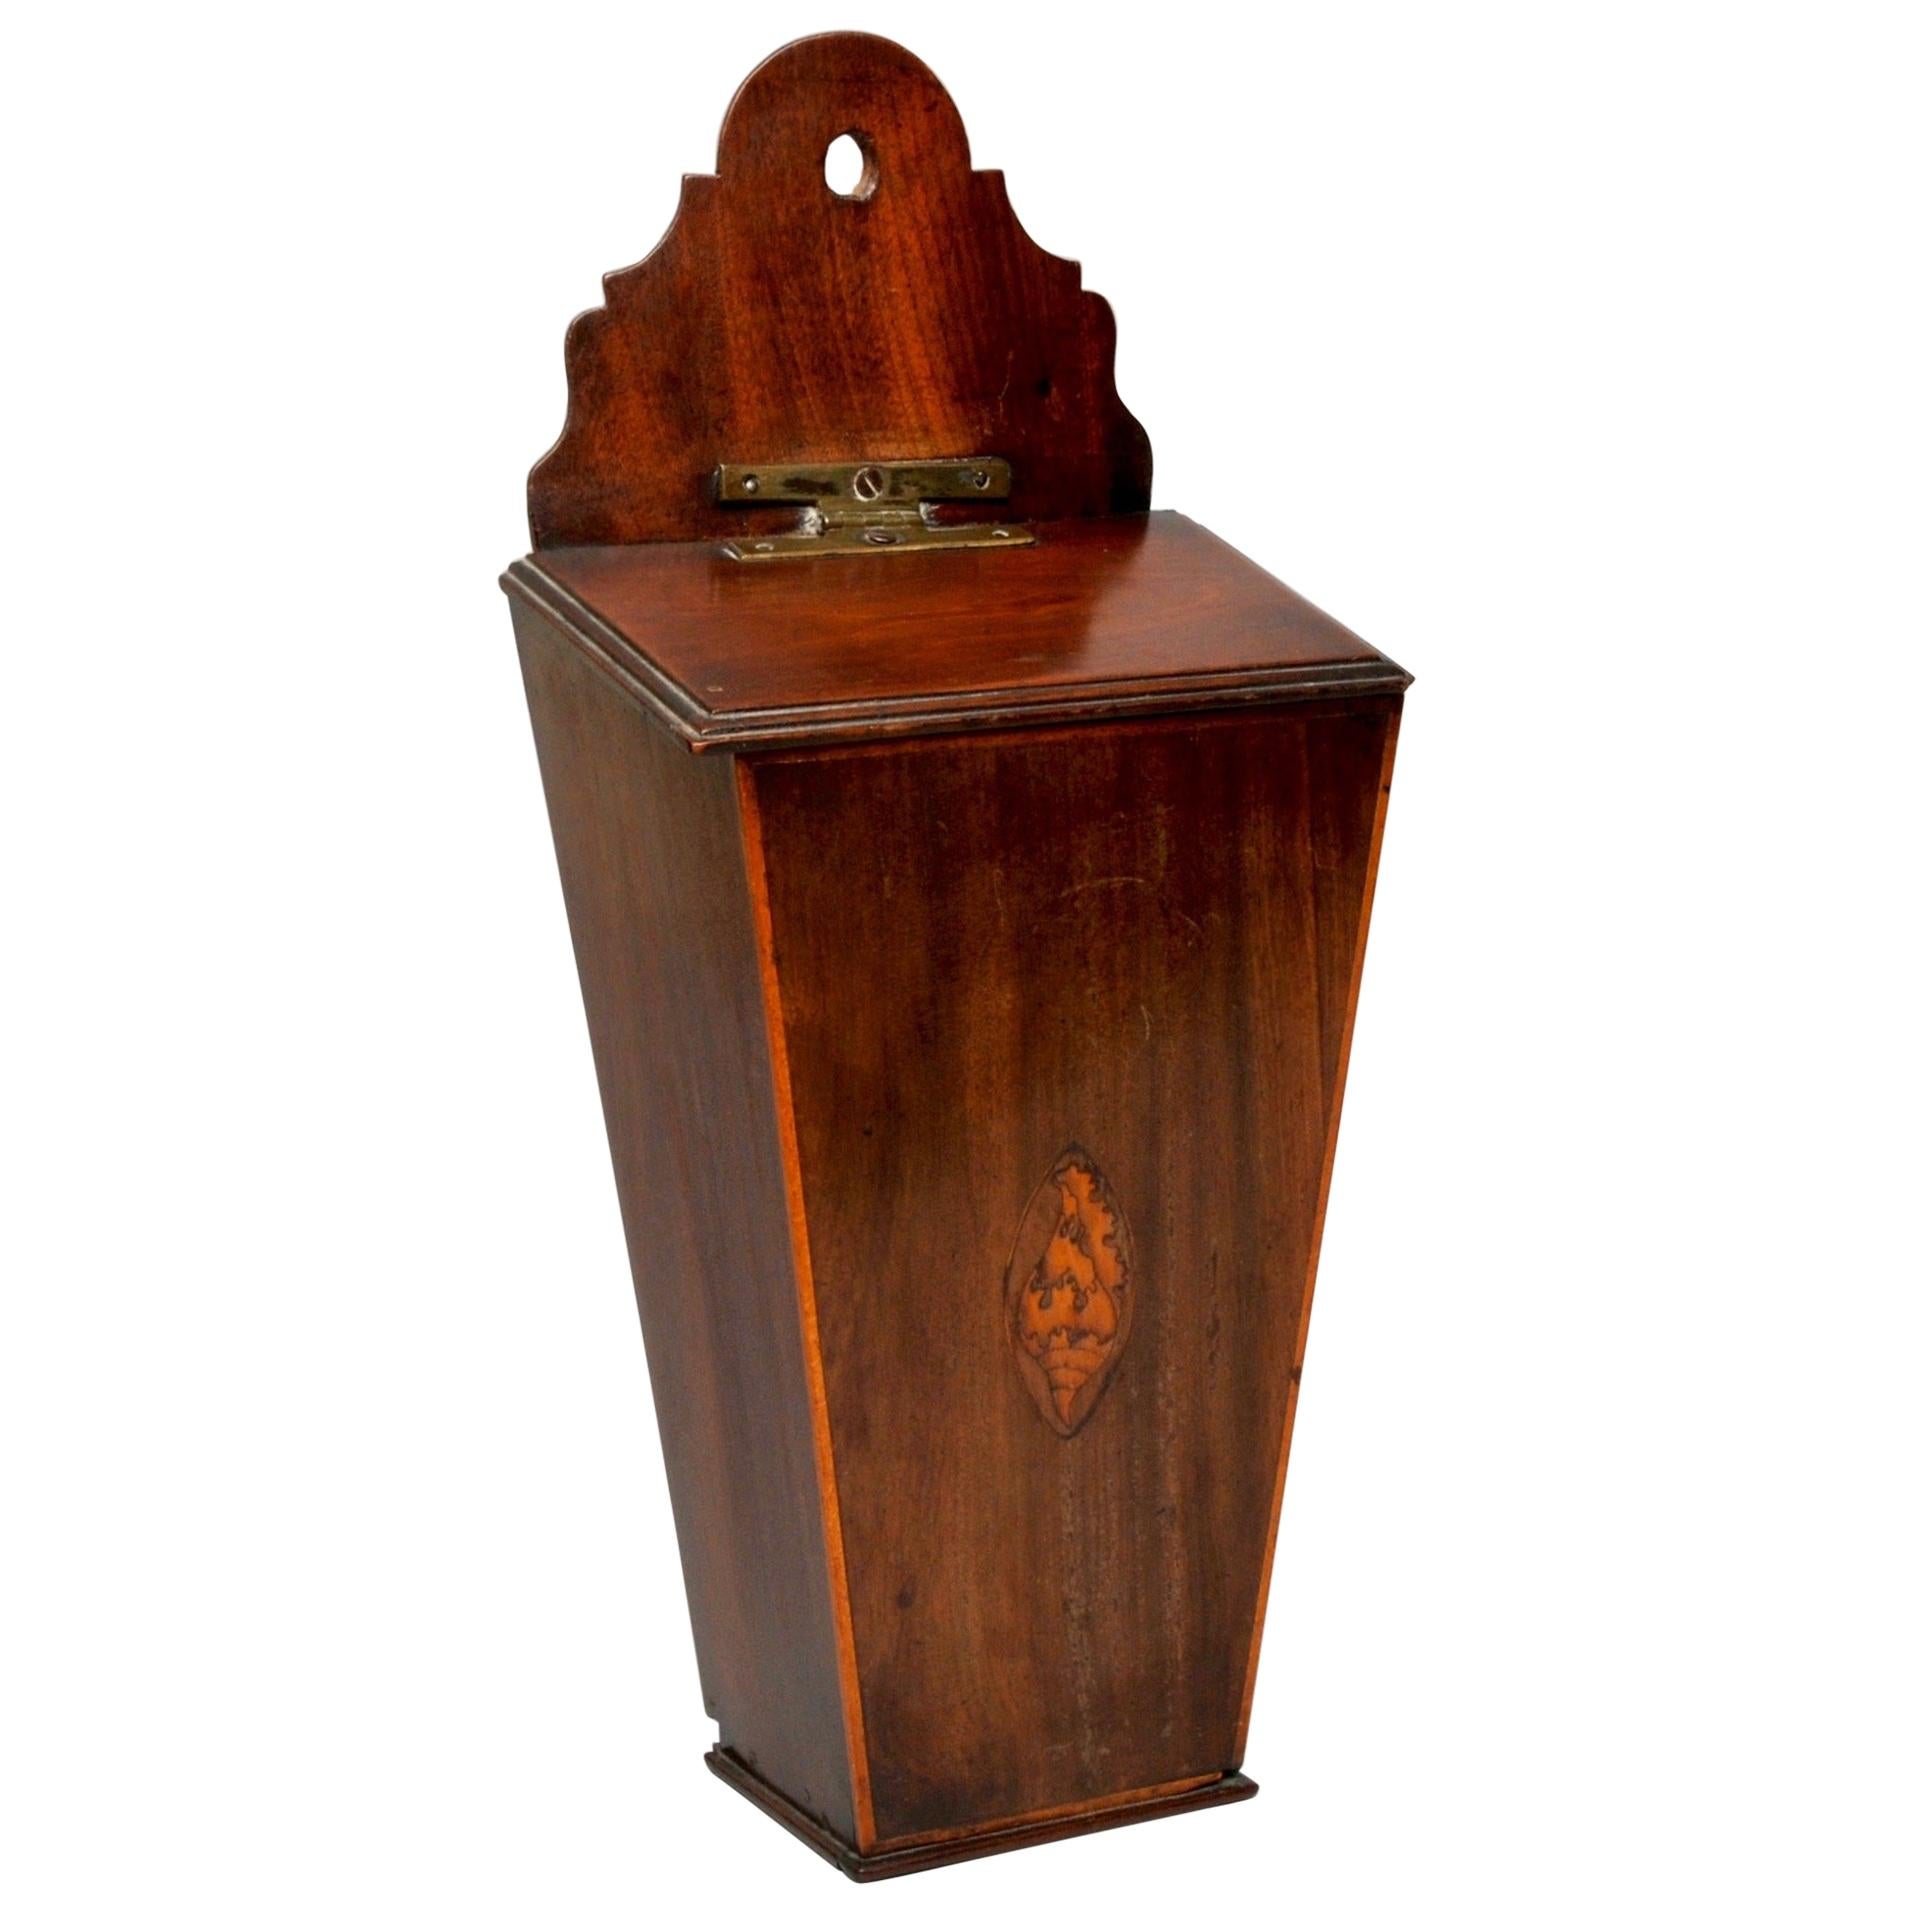 Mahogany Candle Box with a Satinwood Shell Inlay, circa 1790